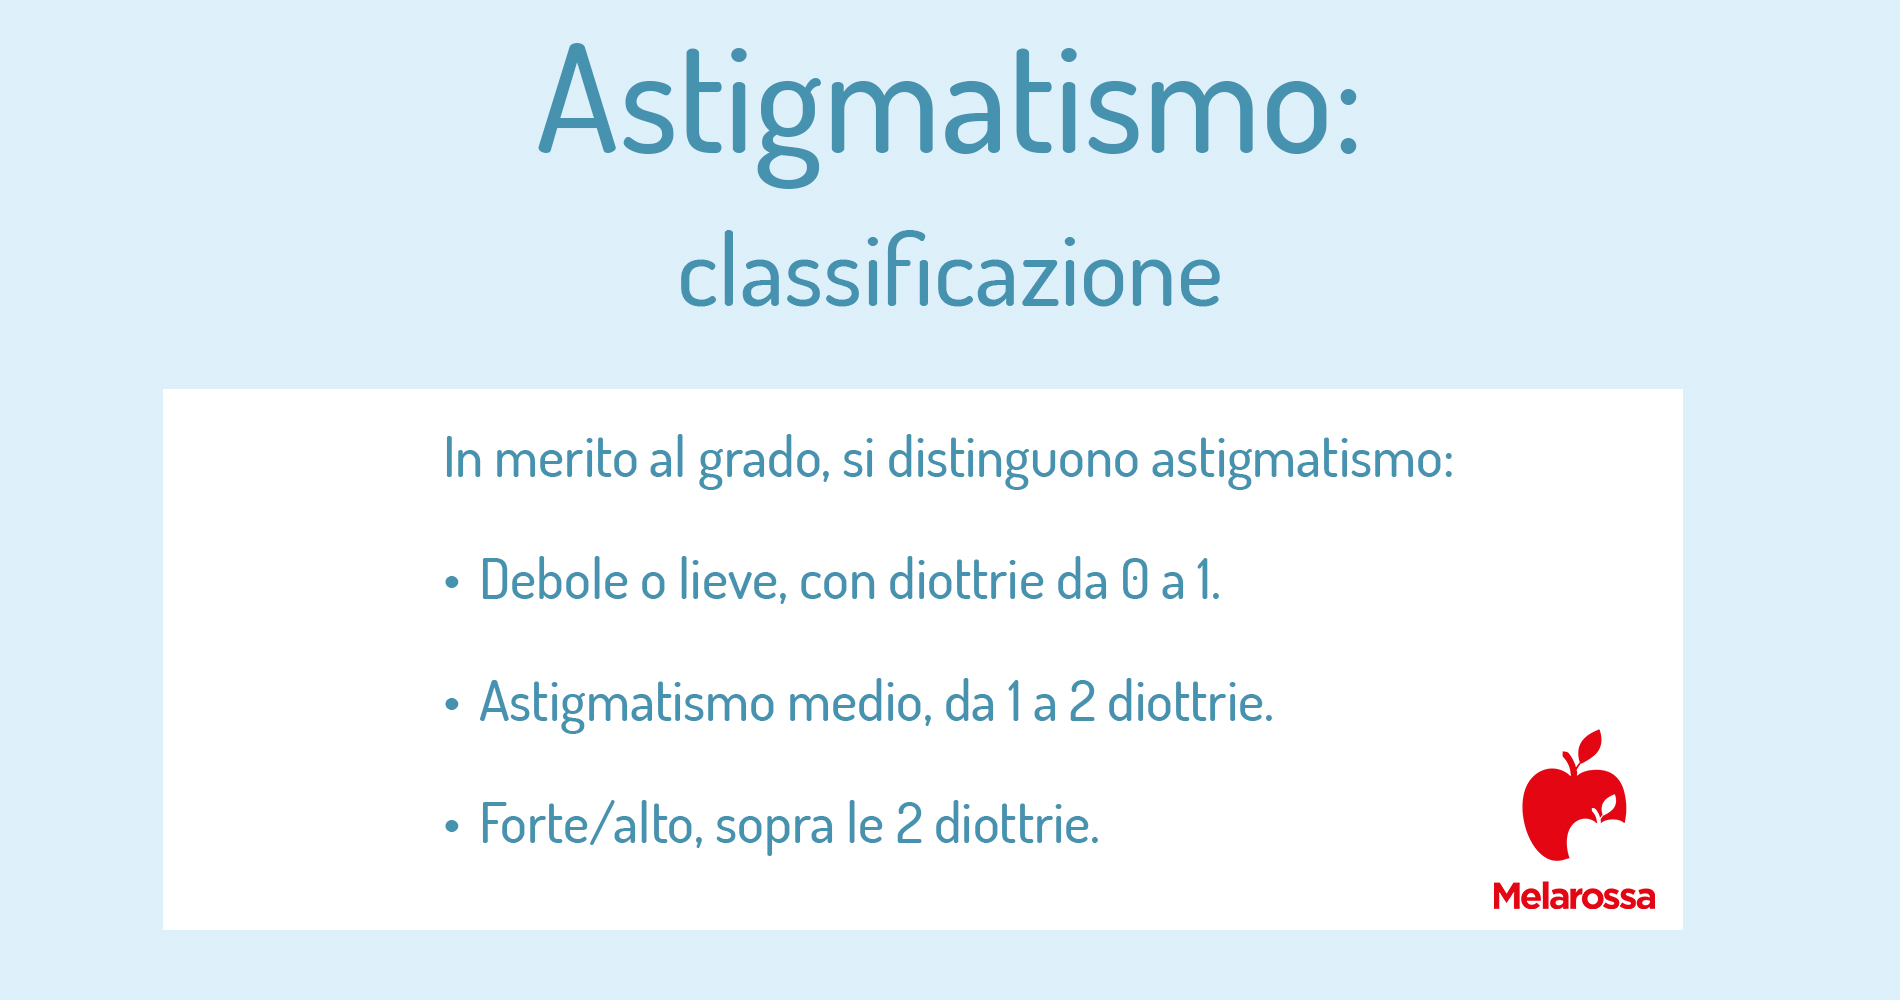 astigmatismo: classificazione